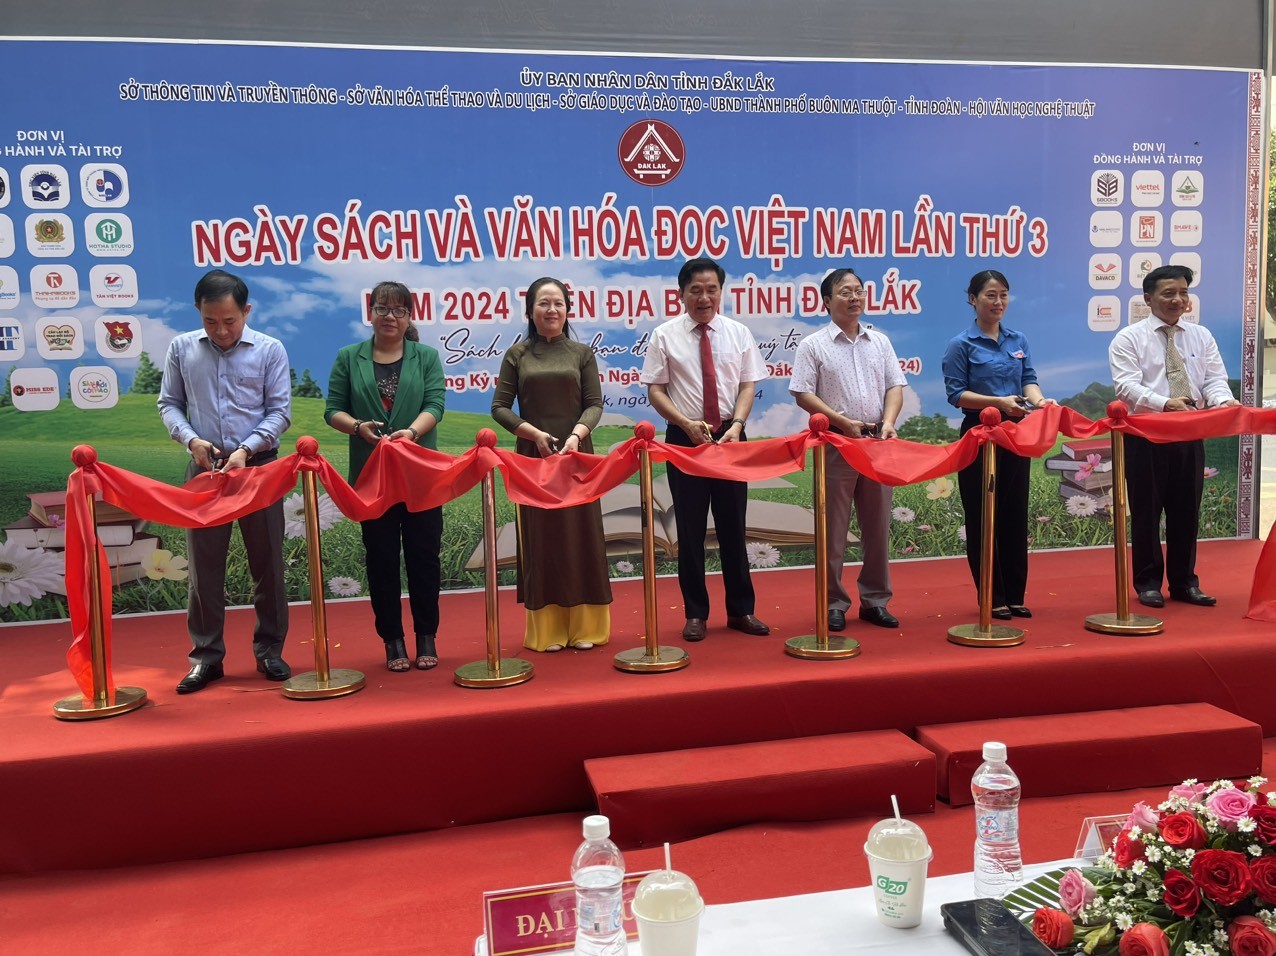 Các đại biểu cắt băng khai mạc Ngày Sách và Văn hóa đọc Việt Nam lần thứ 3 năm 2024 trên địa bàn tỉnh Đắk Lắk.